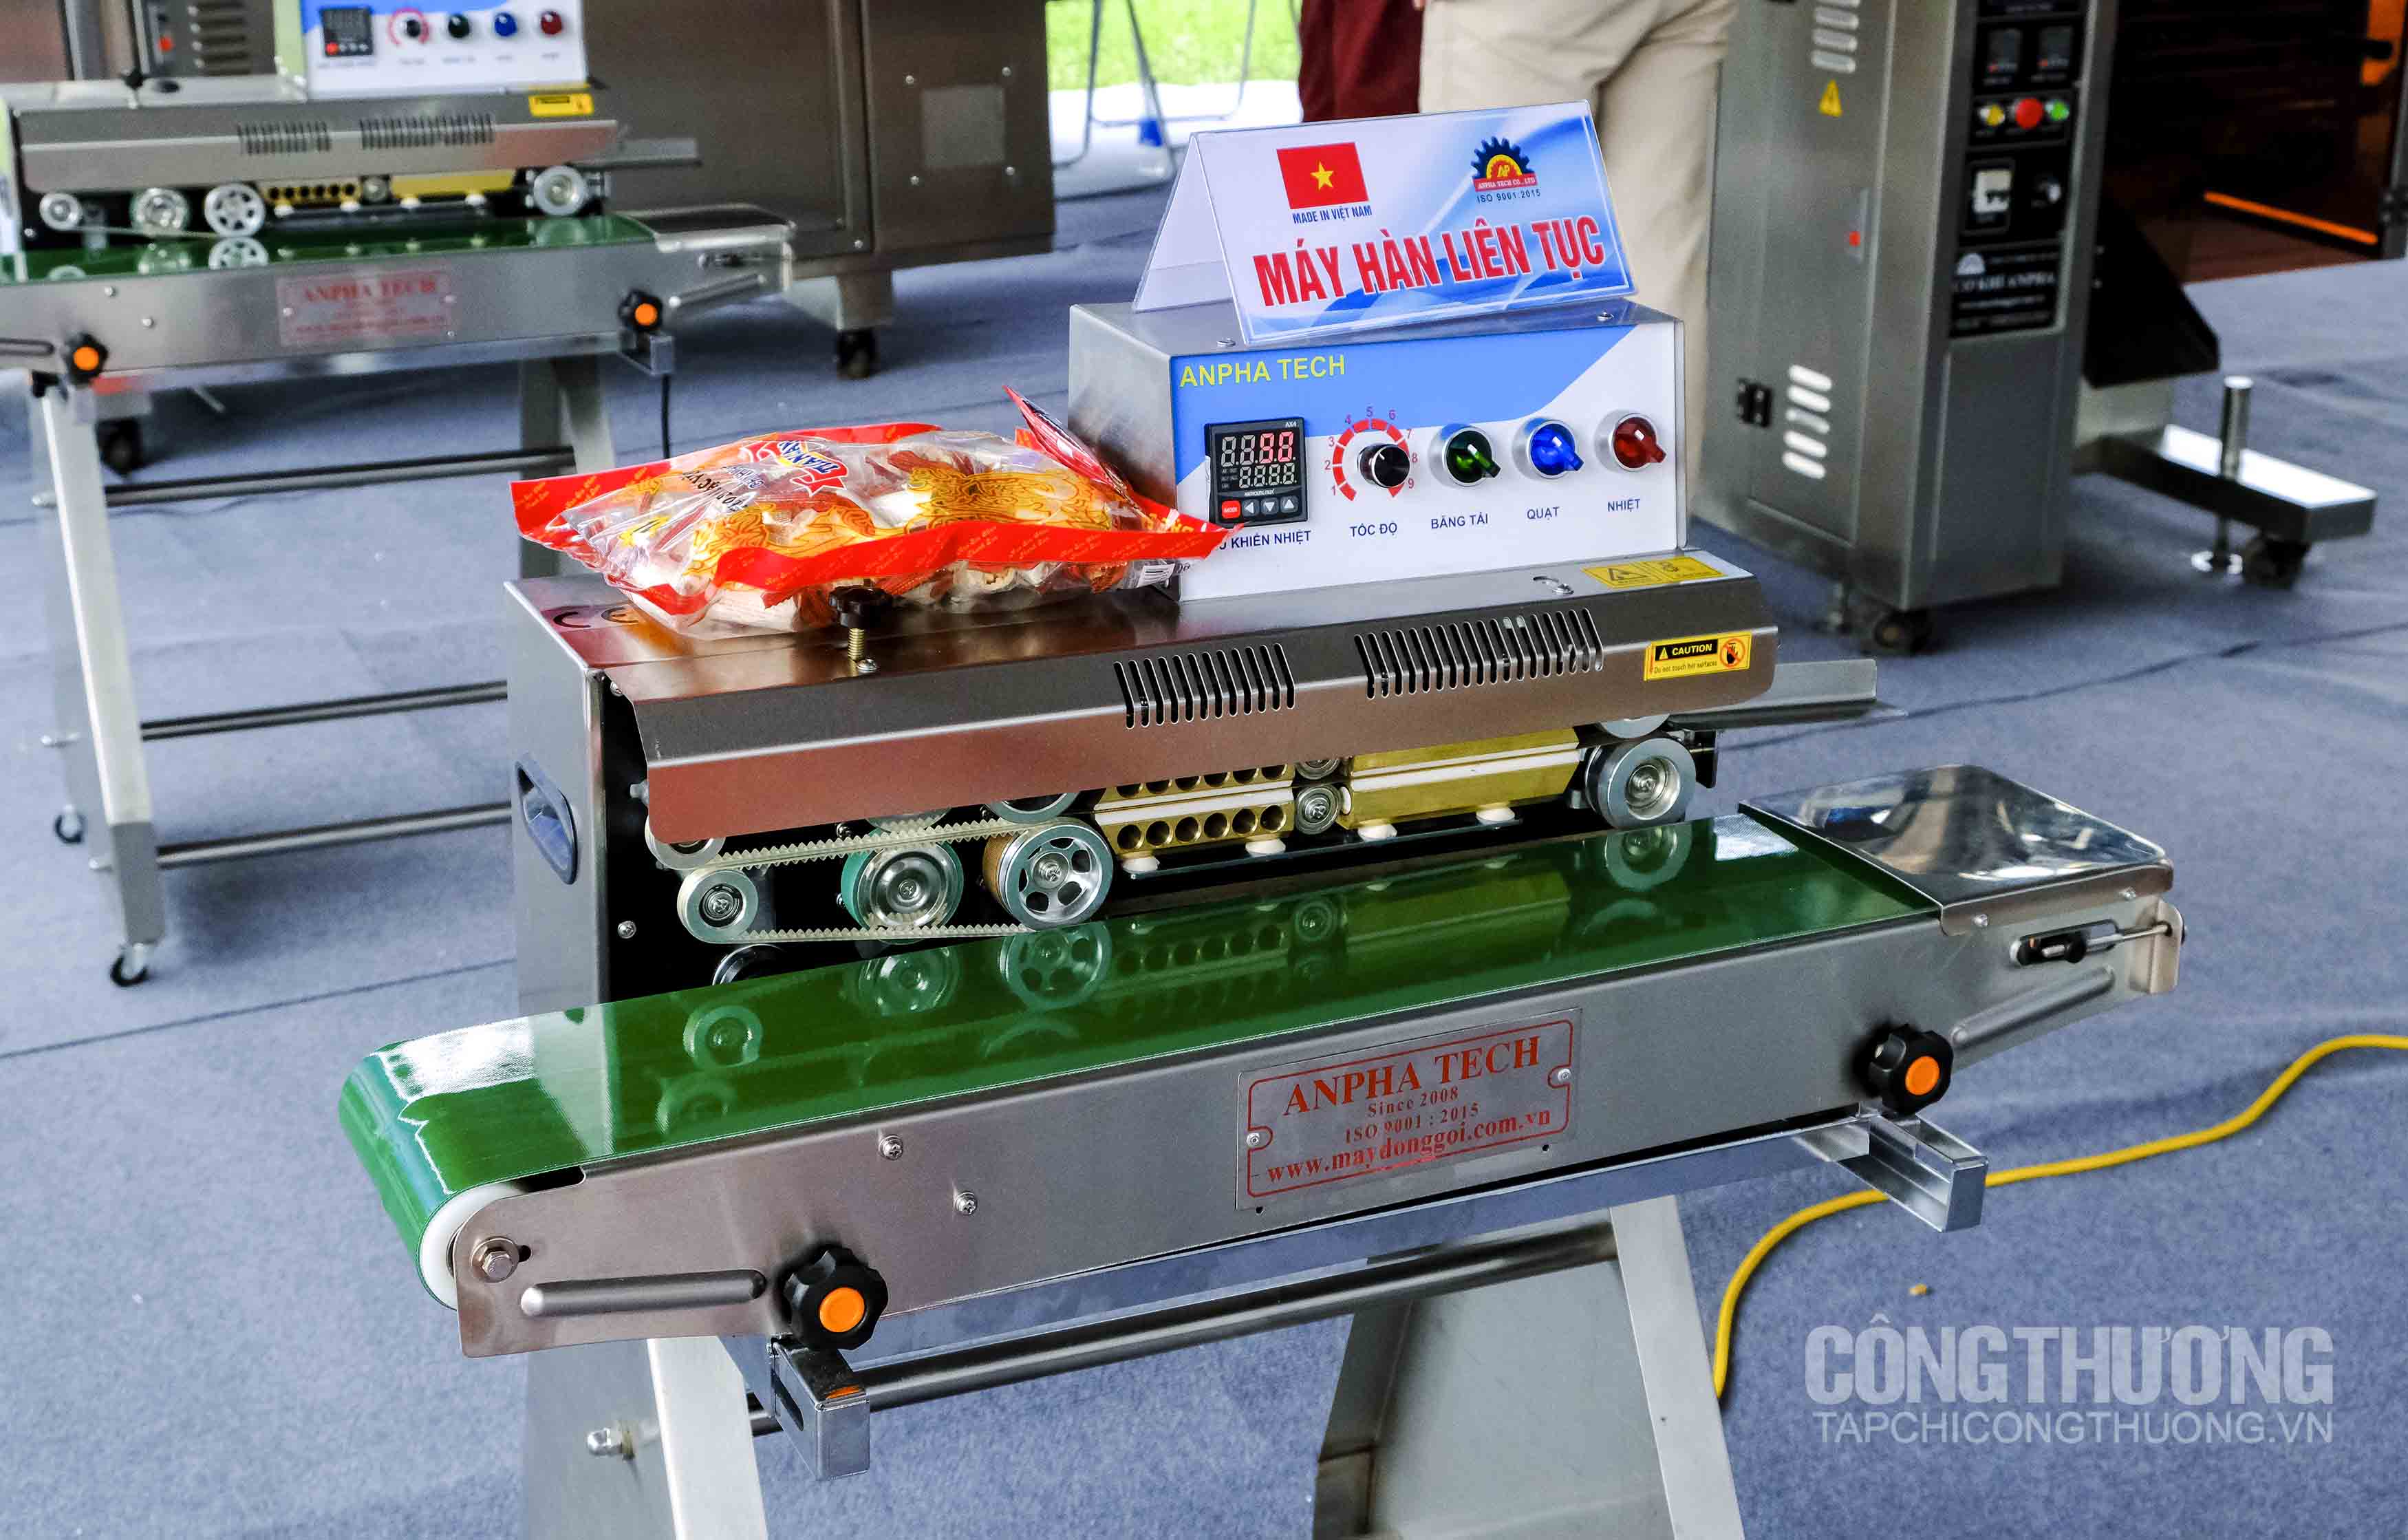 Một số loại máy móc, thiết bị được giới thiệu tại Triển lãm hội chợ hàng công nghiệp nông thôn tiêu biểu năm 2019